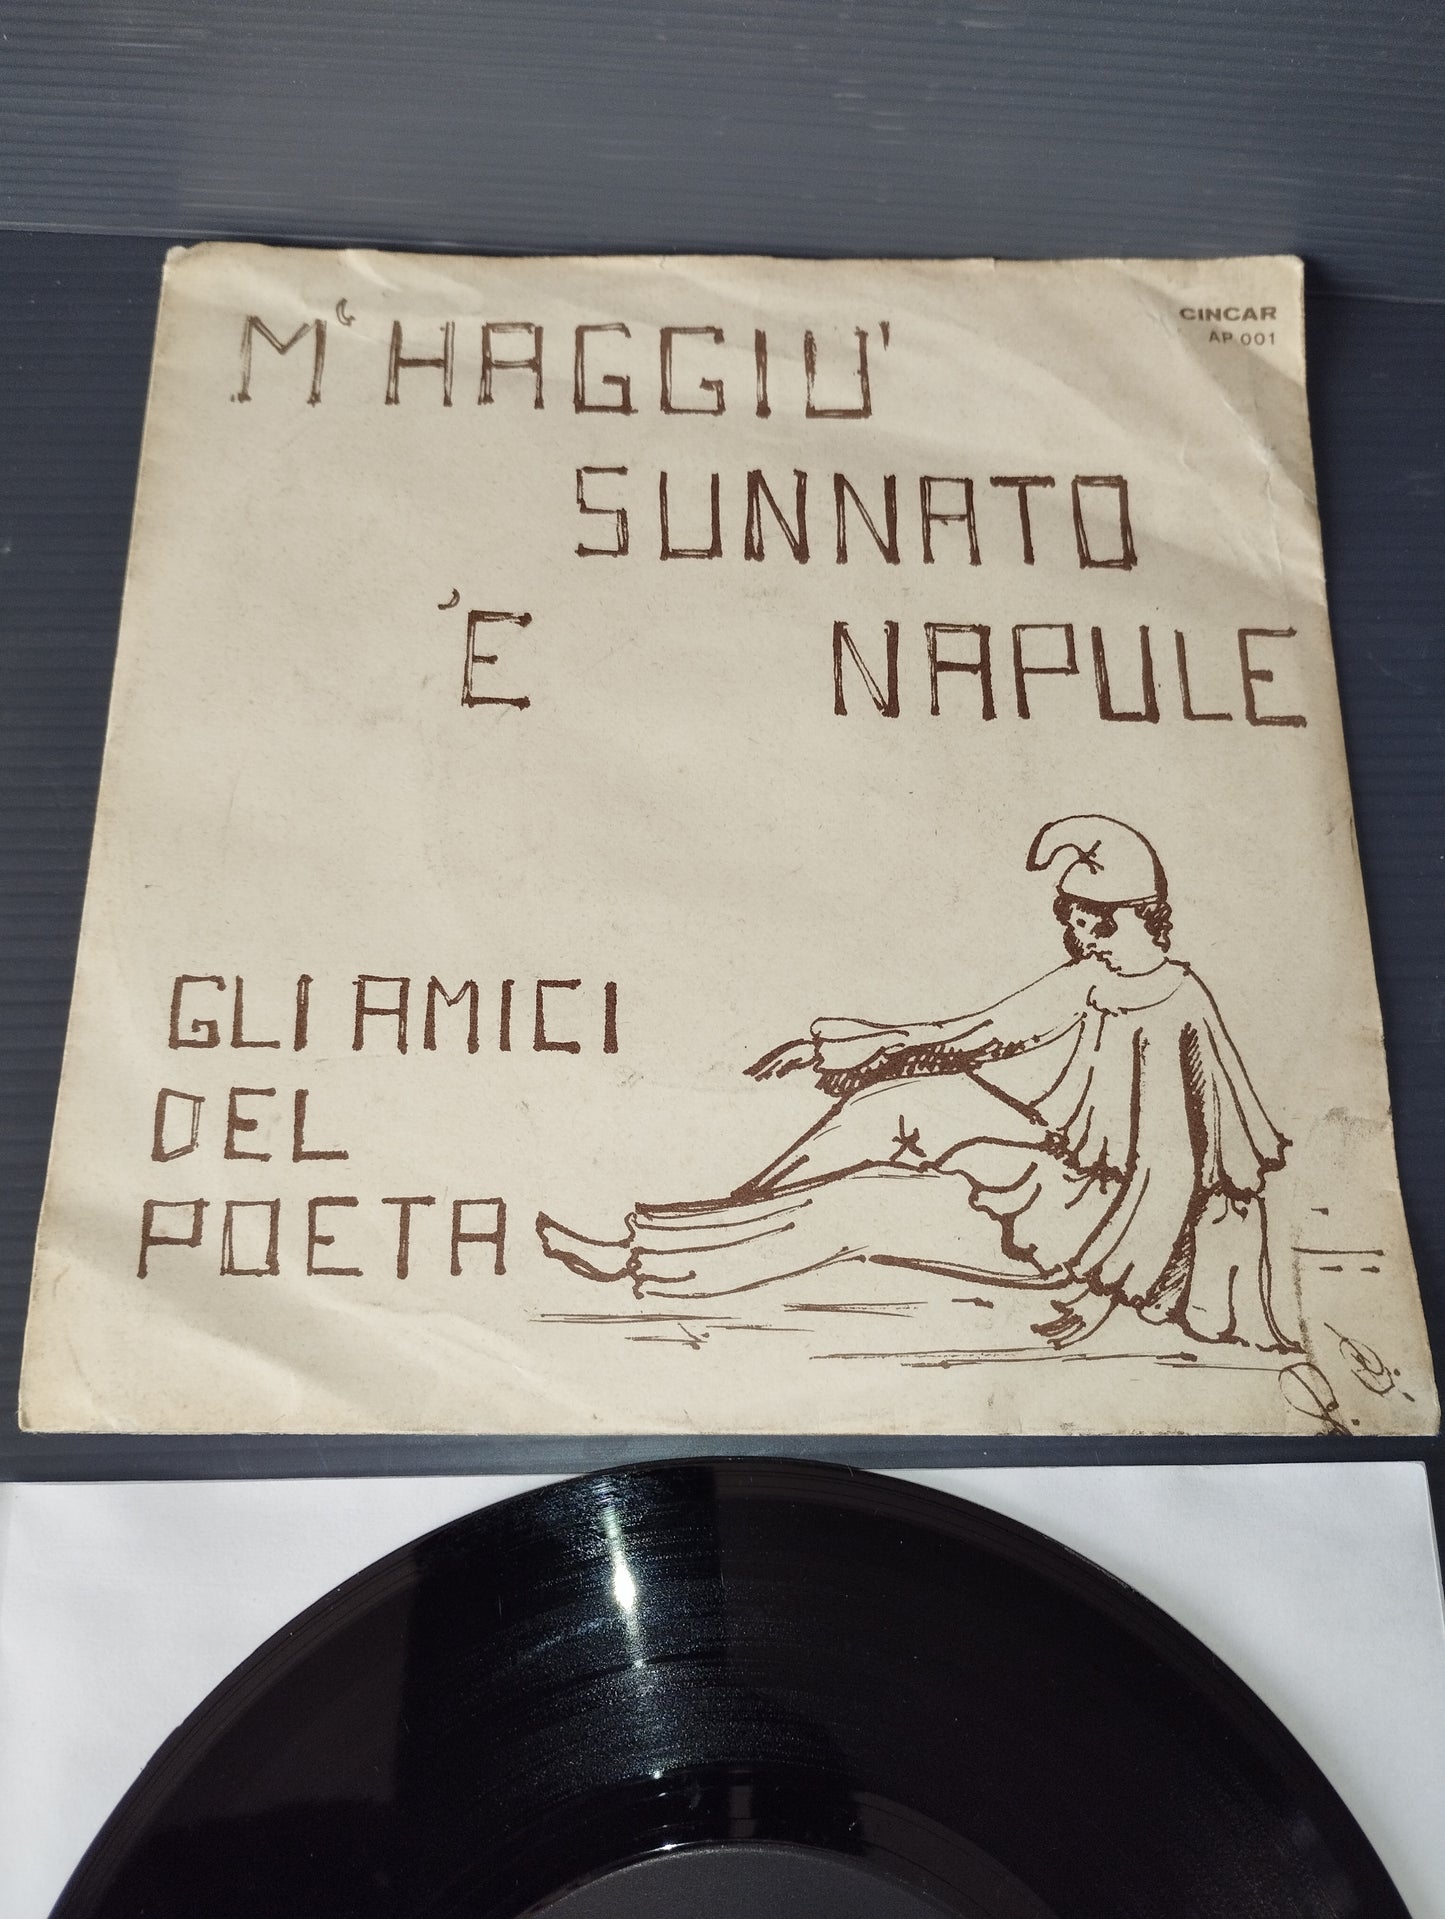 Uocchie senza lacreme/M'Haggio Sunnato 'e Napule" Gli Amici Del Poeta 45 rpm

 Published by Cincar code AP 001